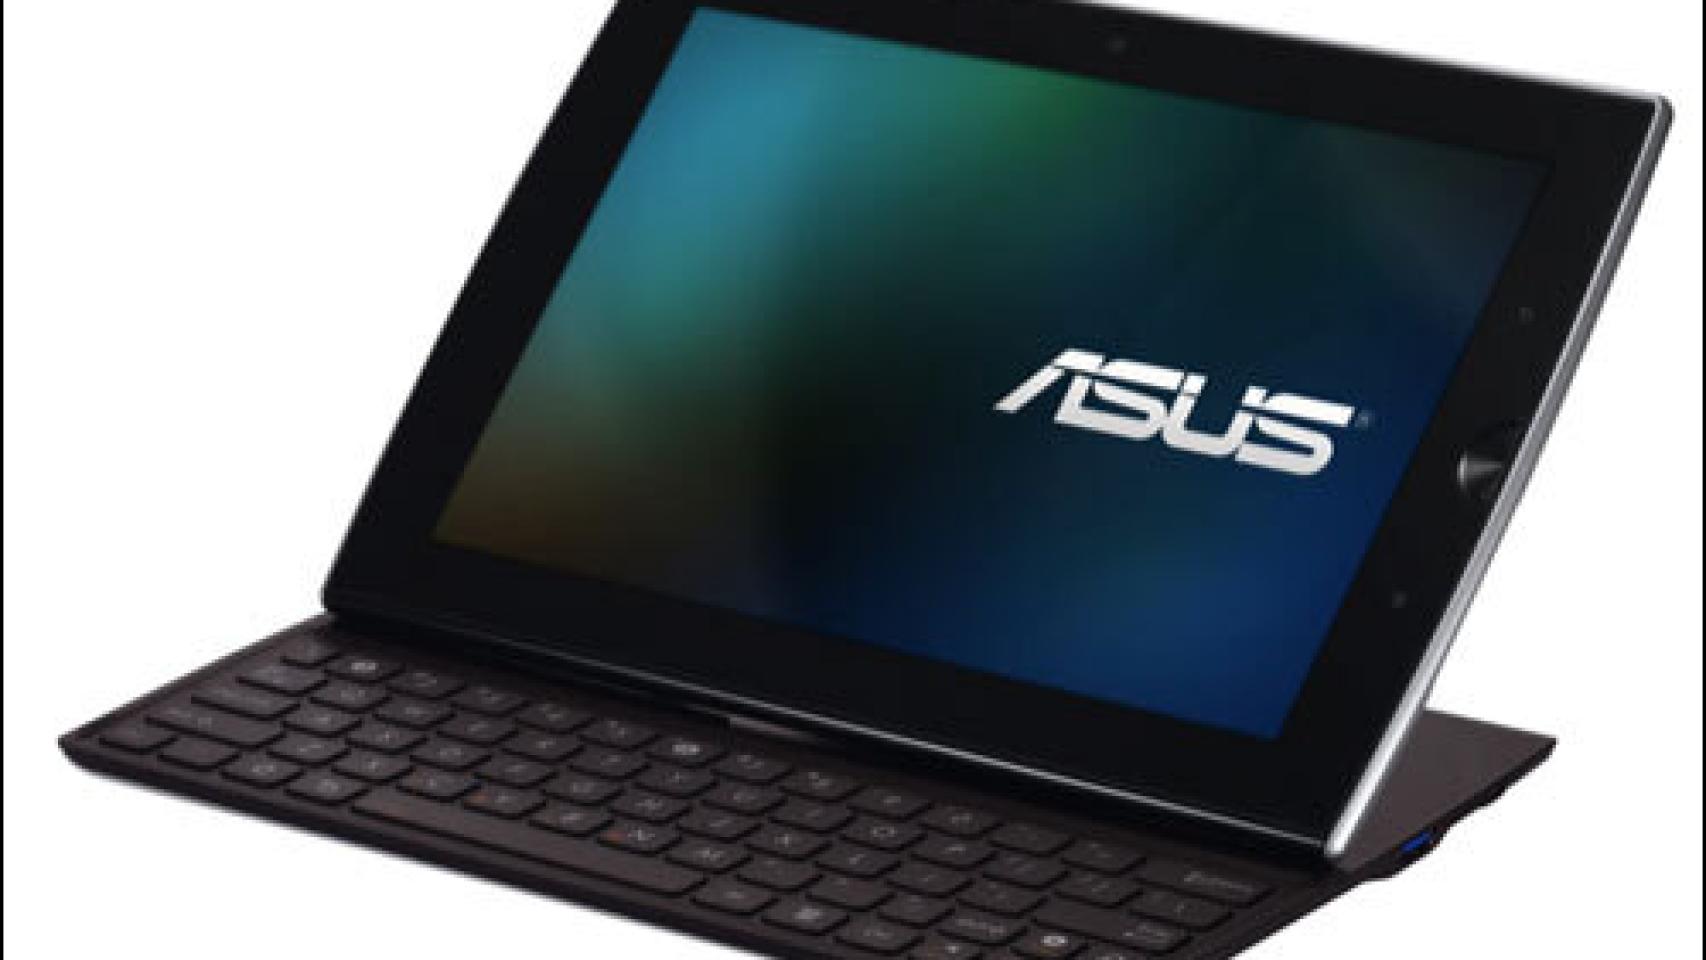 Asus y sus dos nuevas tablets con Honeycomb: Slider y Transformer